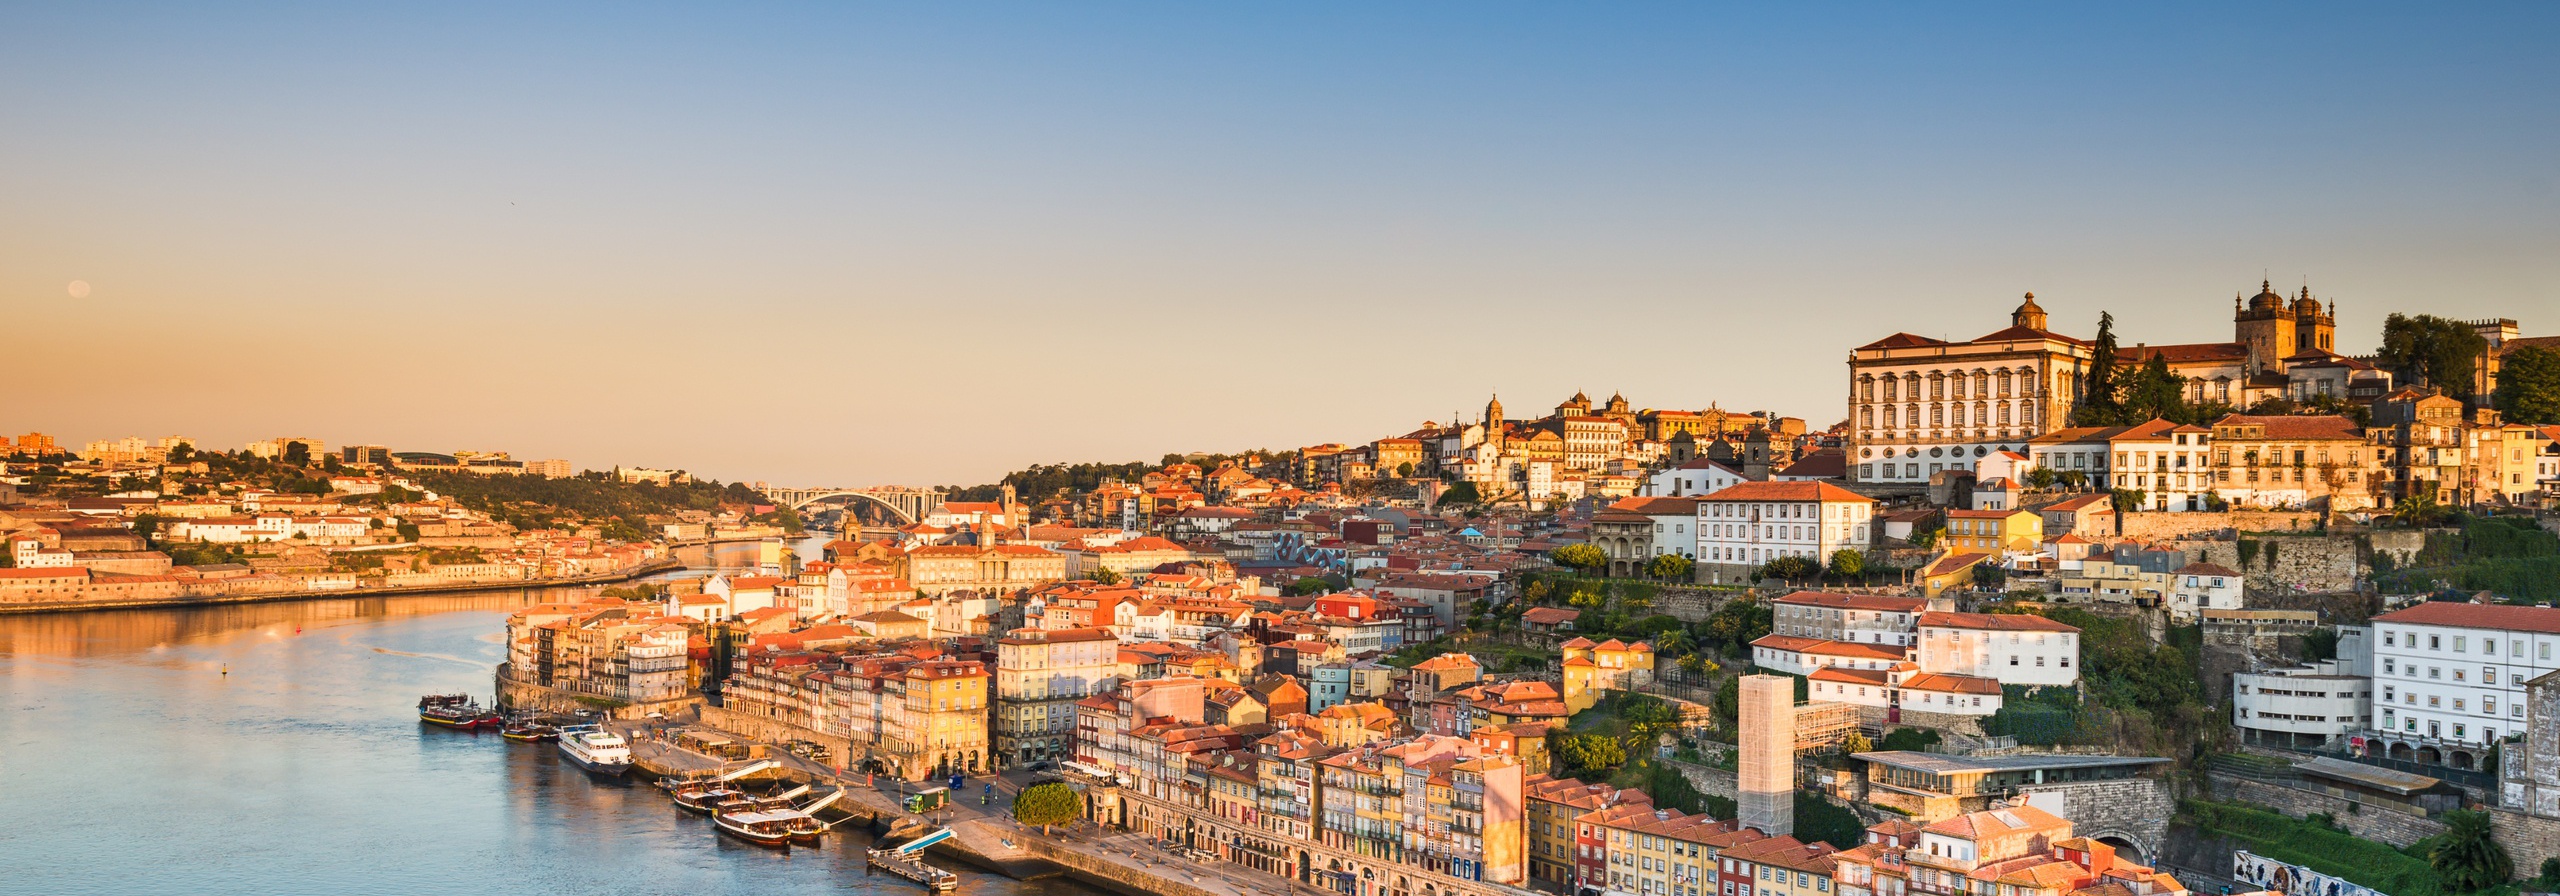 Ribeira, City of Porto